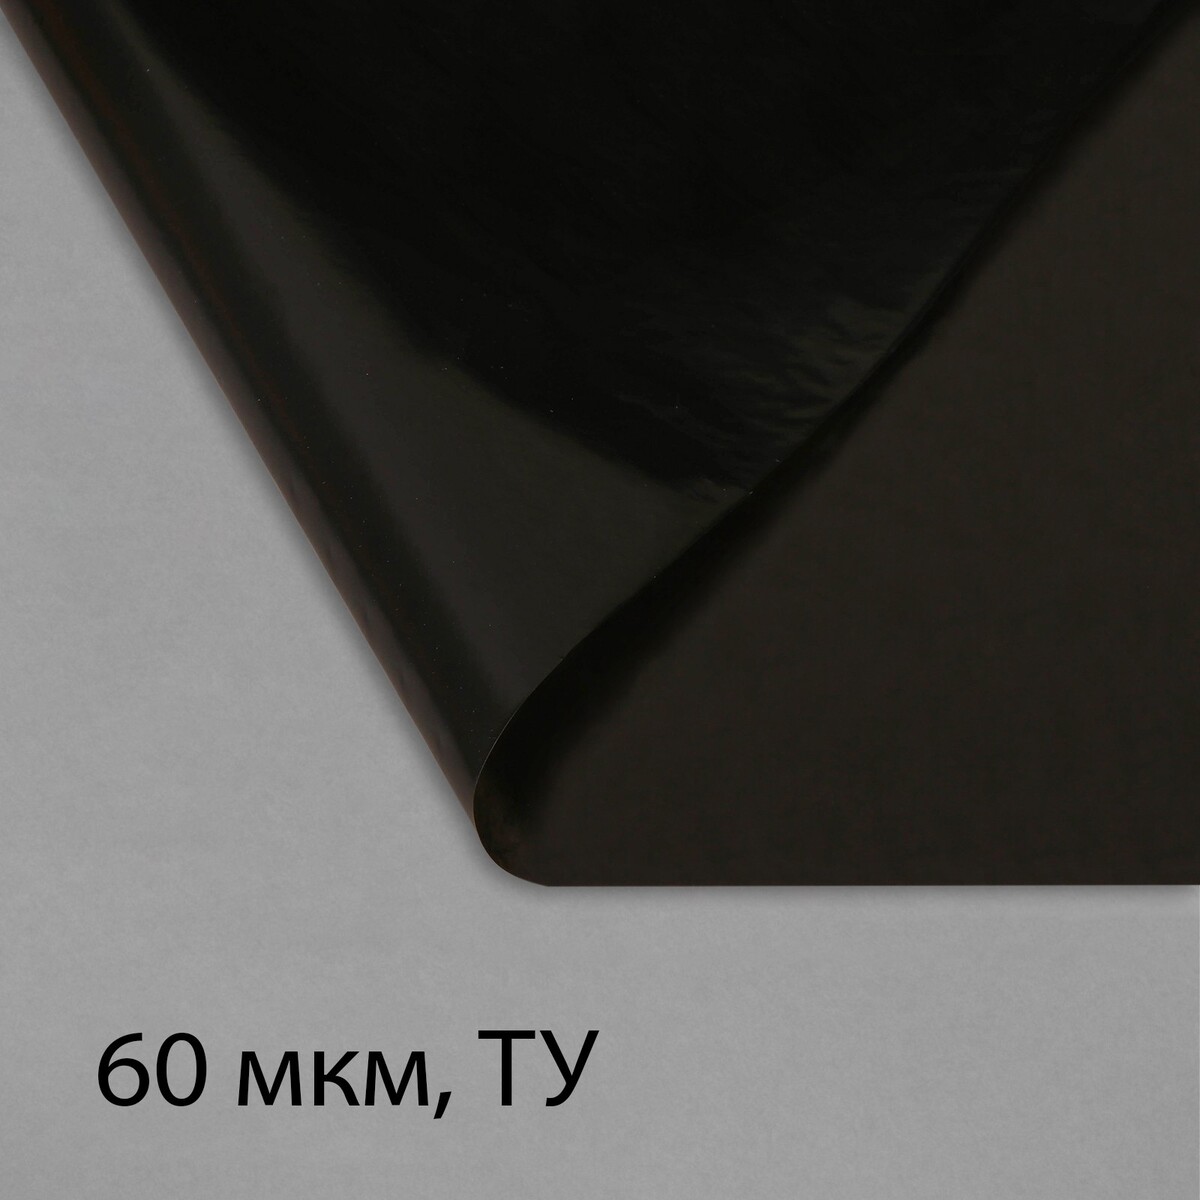 Пленка полиэтиленовая, техническая, 60 мкм, черная, длина 10 м, ширина 3 м, рукав (1.5 м × 2), эконом 50%, greengo